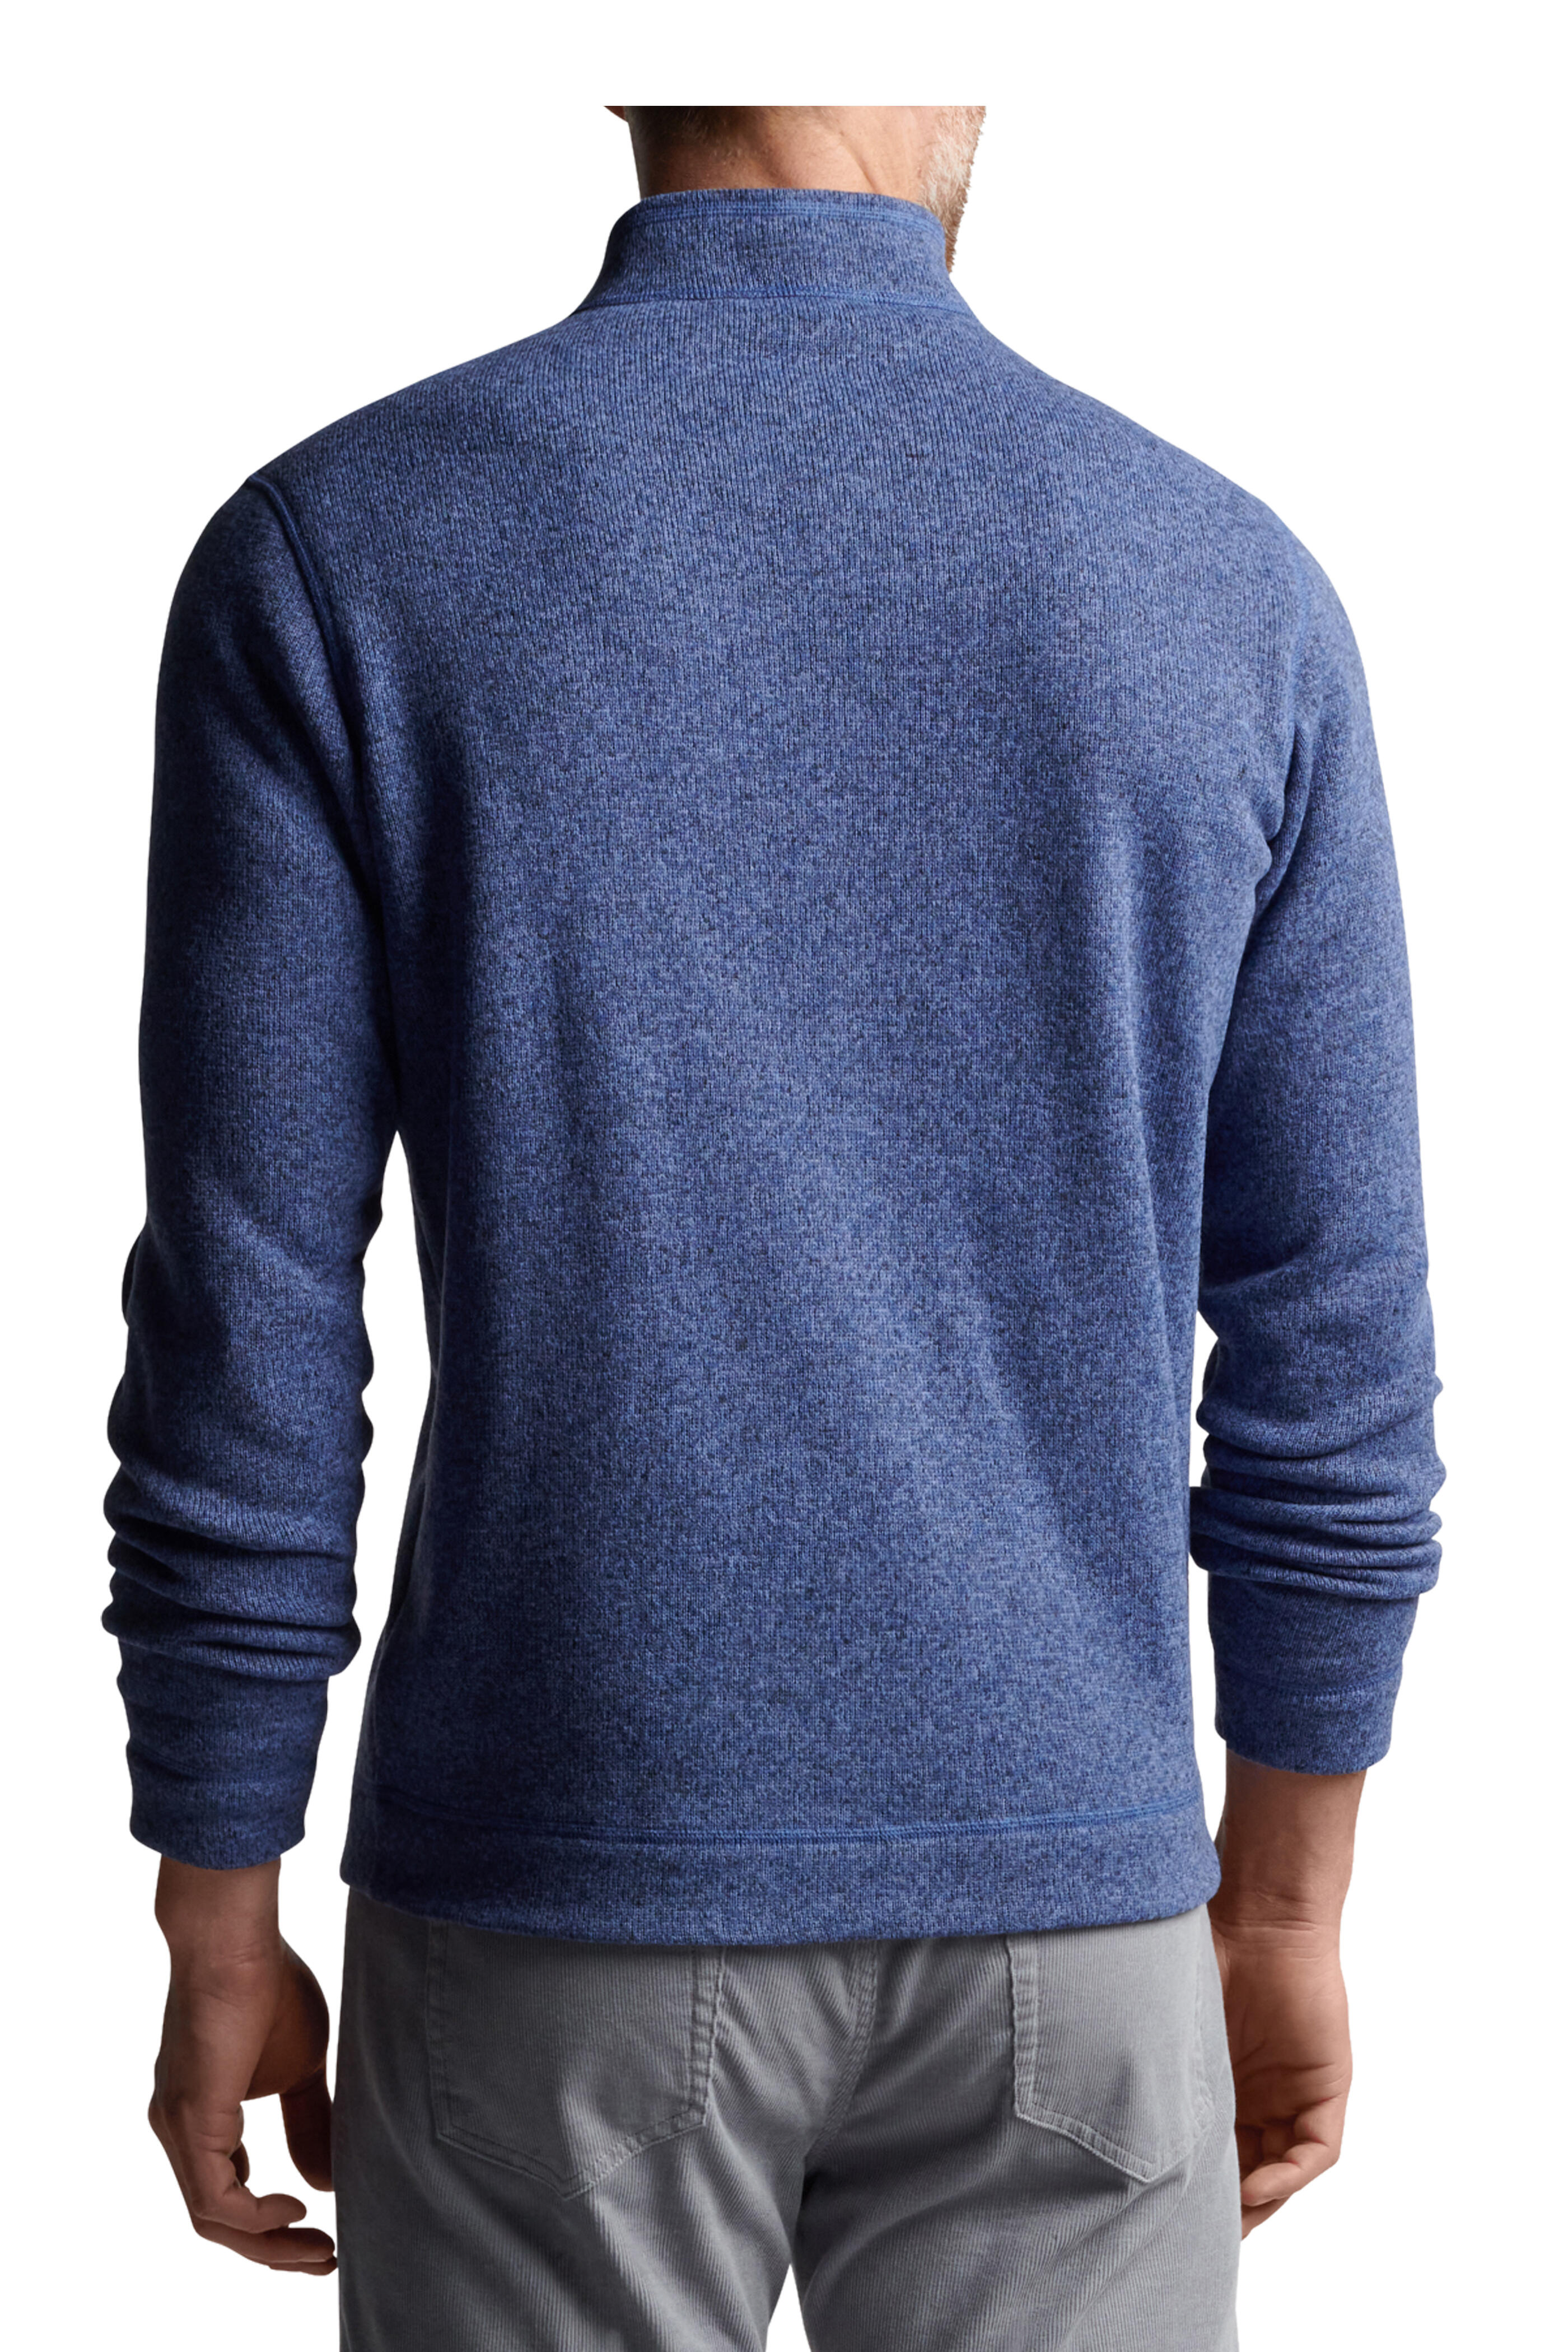 Westport Lifestyle Quarter-Zip Sweater Fleece Pullover - Westport